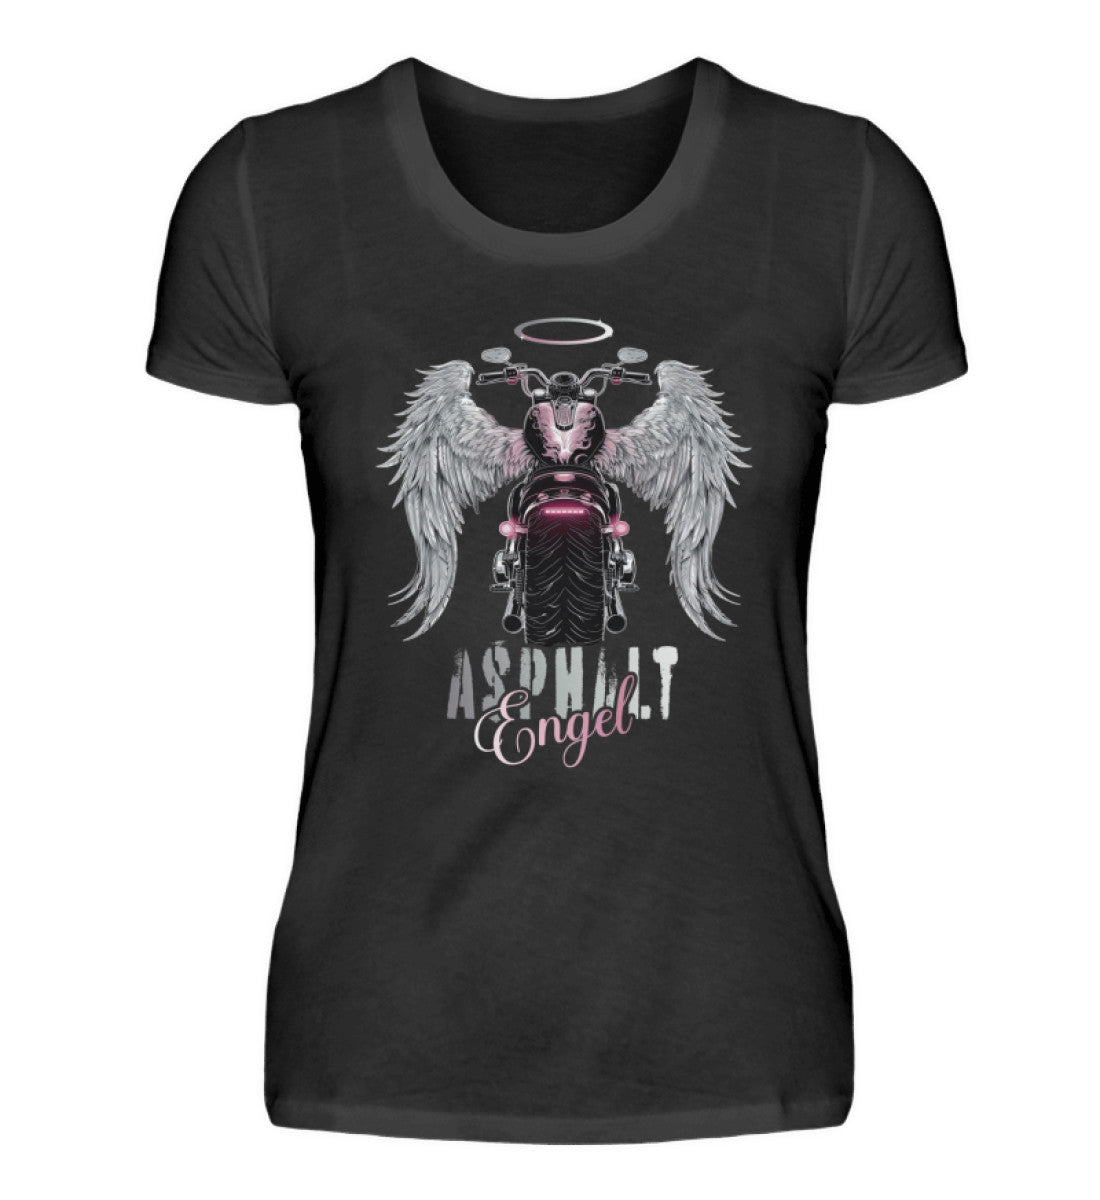 Ein Bikerin T-Shirt für Motorradfahrerinnen von Wingbikers mit dem Aufdruck, Asphalt Engel - mit Flügeln, in schwarz.